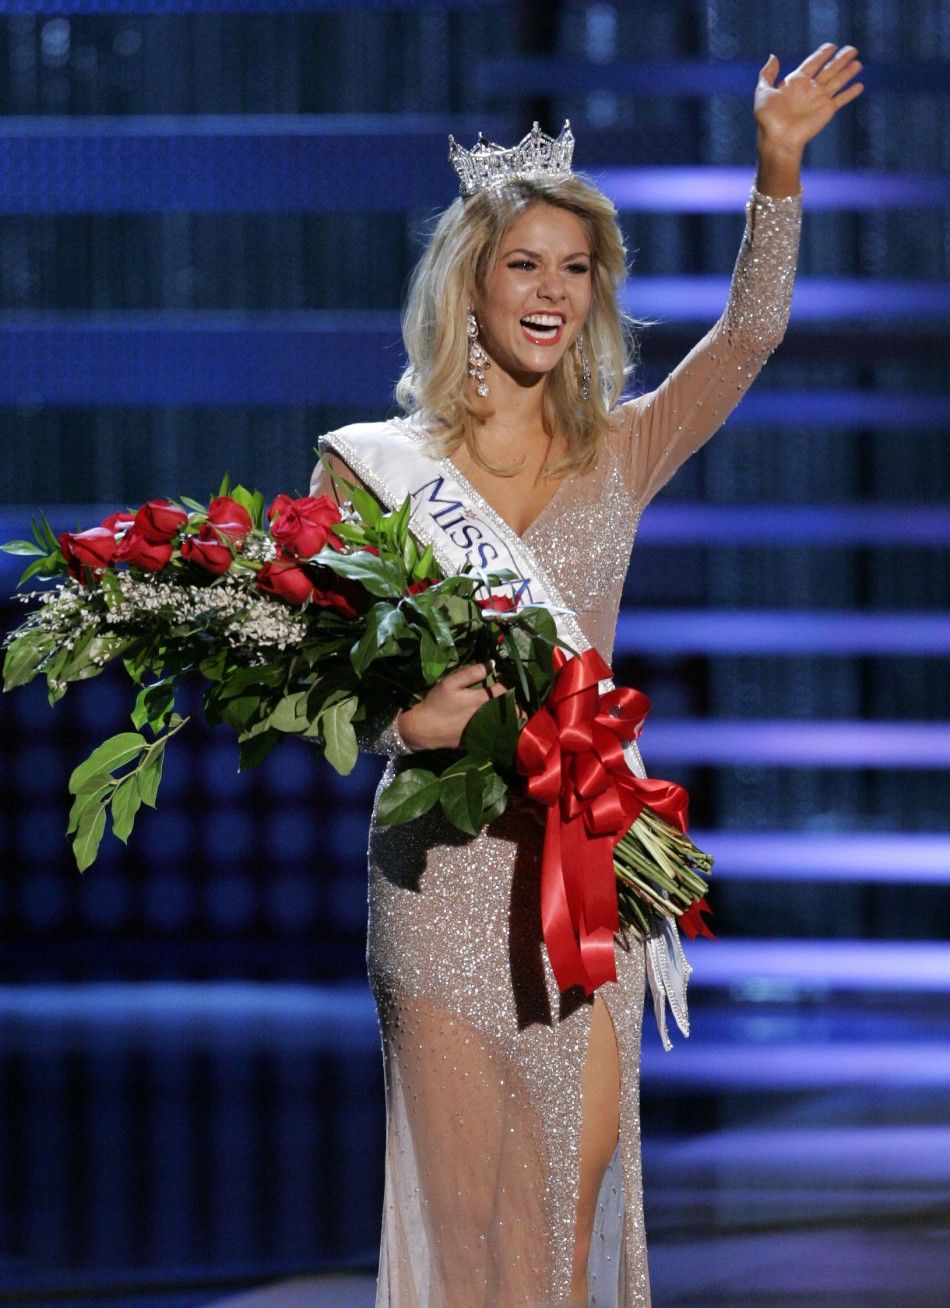 Kristen Haglund, Miss America 2008